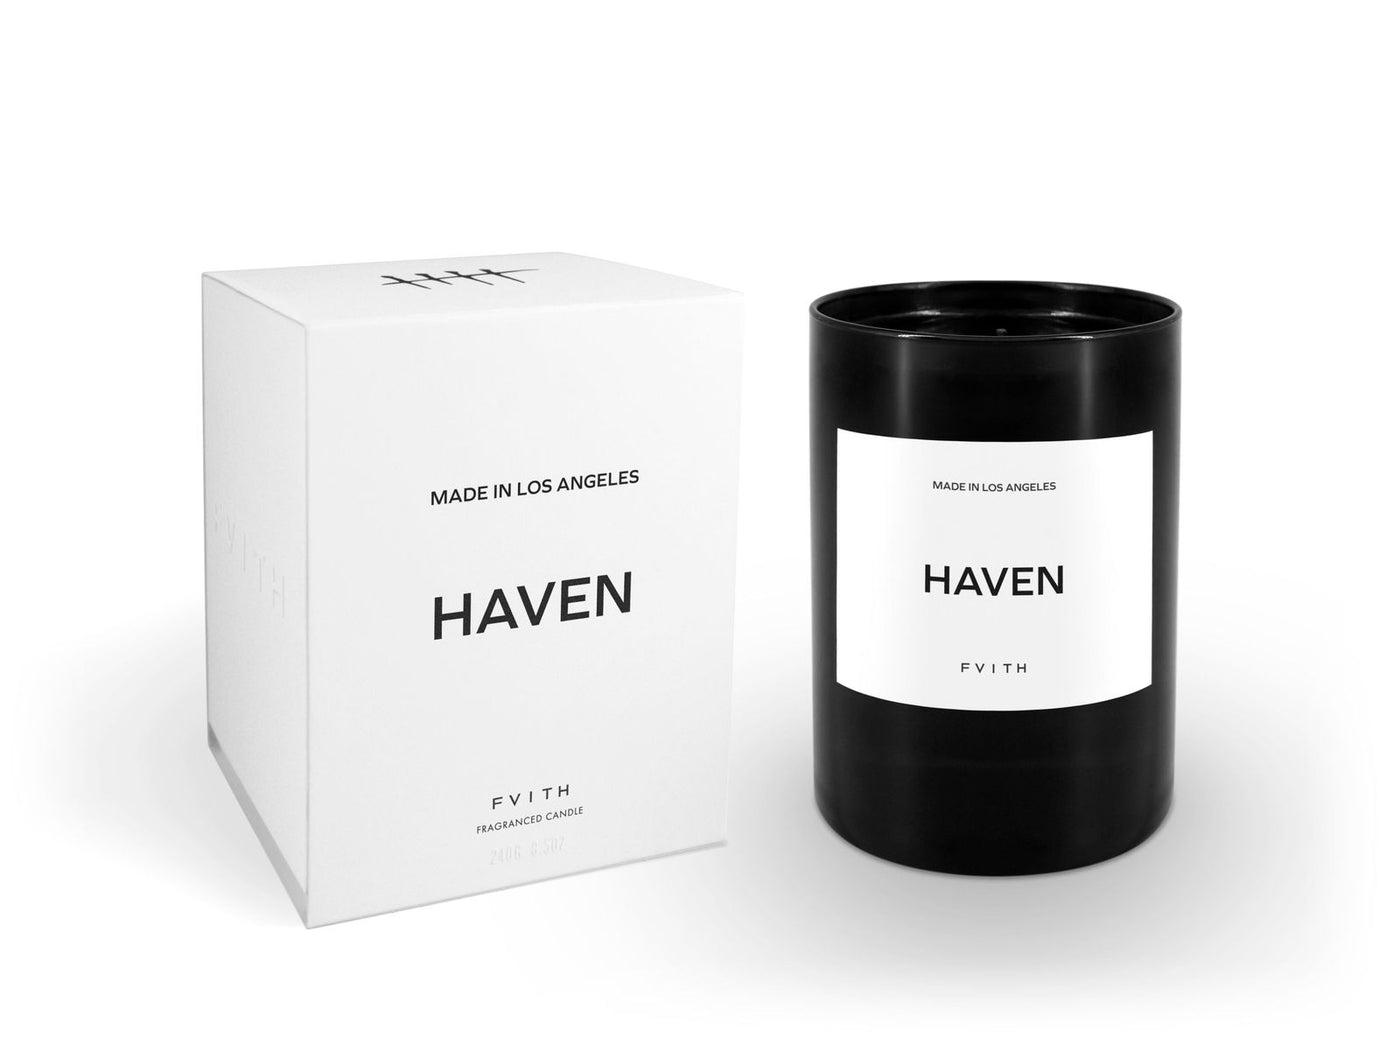 Haven Luxury Candle - 240g (8.5oz)